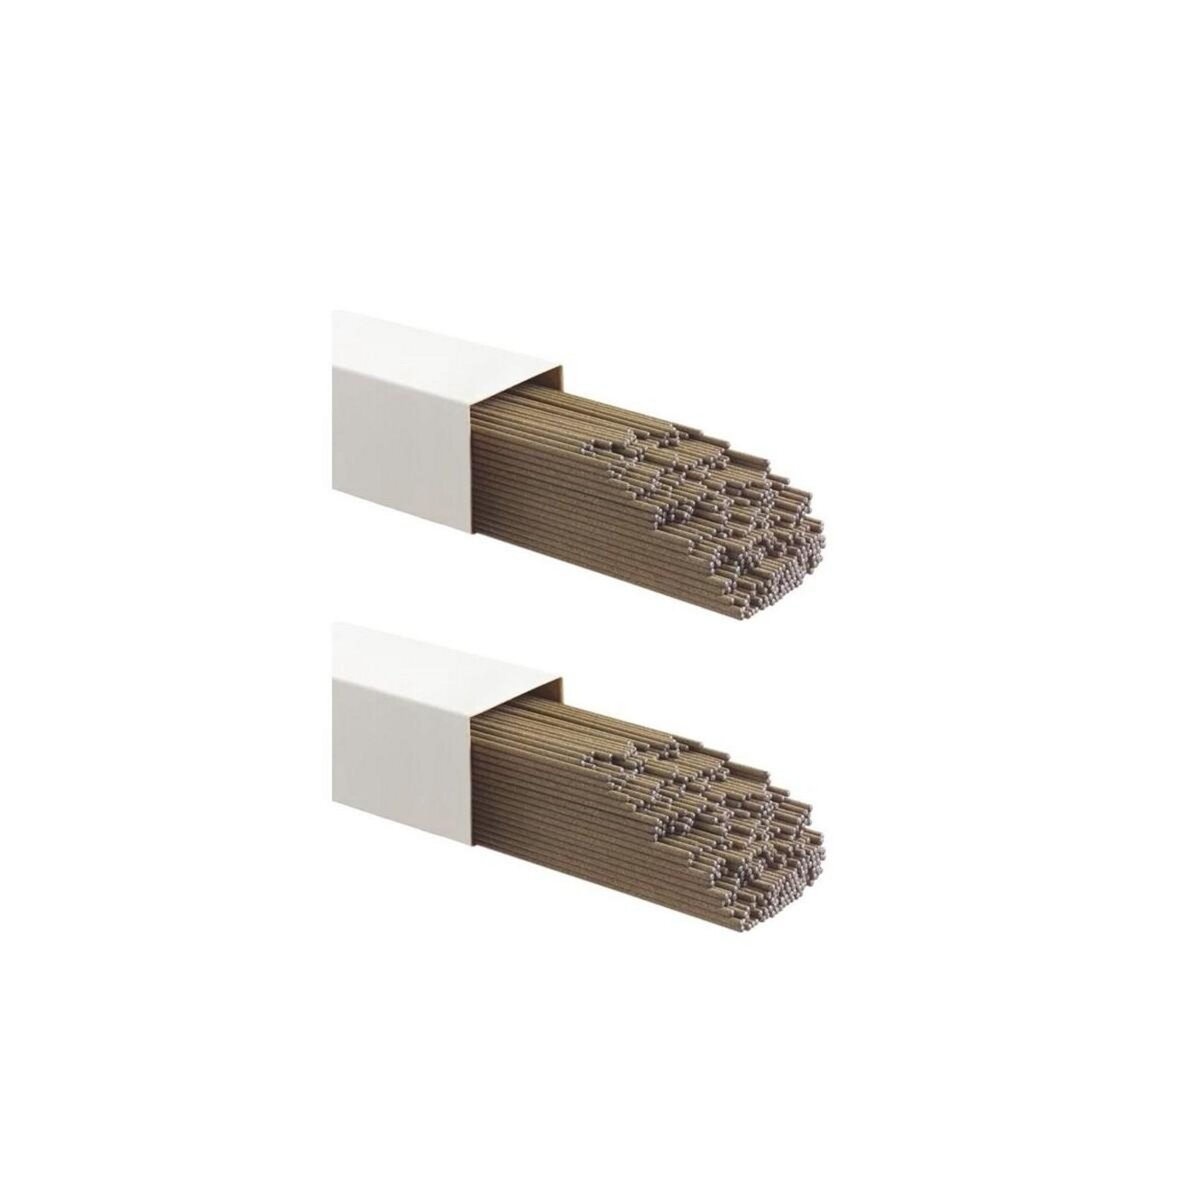 Proweltek Electrodes de soudure Acier 3.2 x 350mm 6 kg 204 Pièces Baguettes traditionnelles toutes positions MMA E6013 FUSION